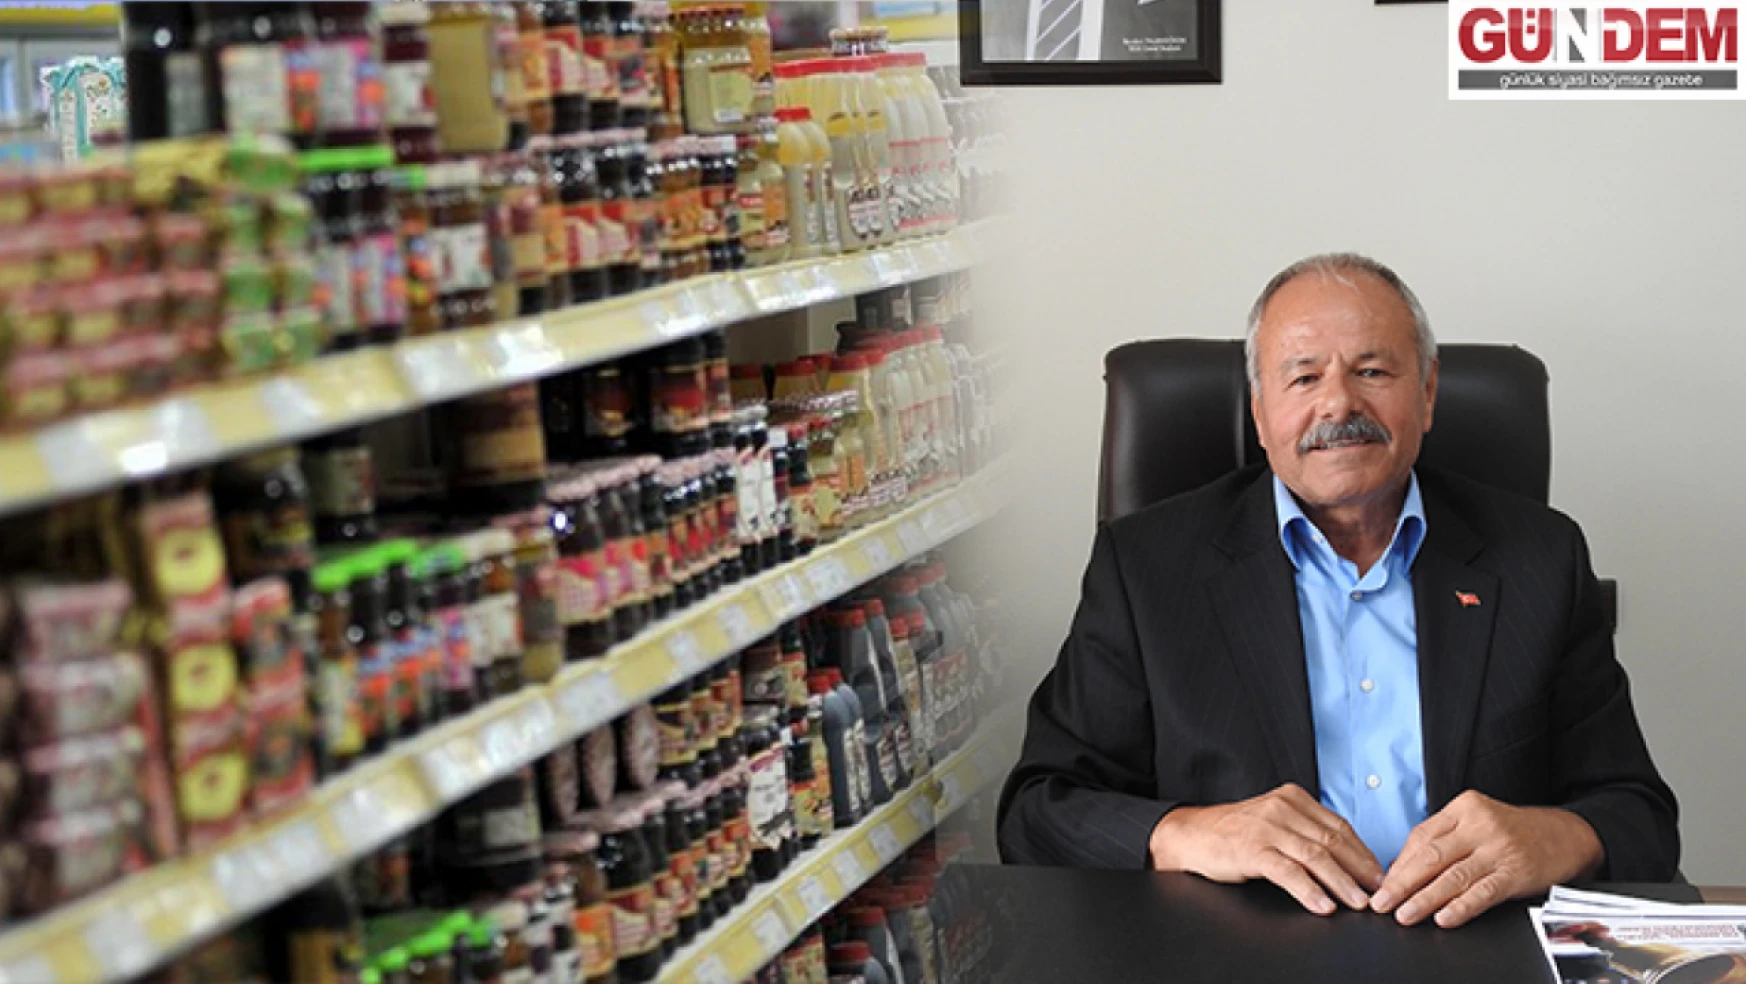 Yaşagör 'Zincir marketler küçük esnafı yok etmeye çalışıyor'